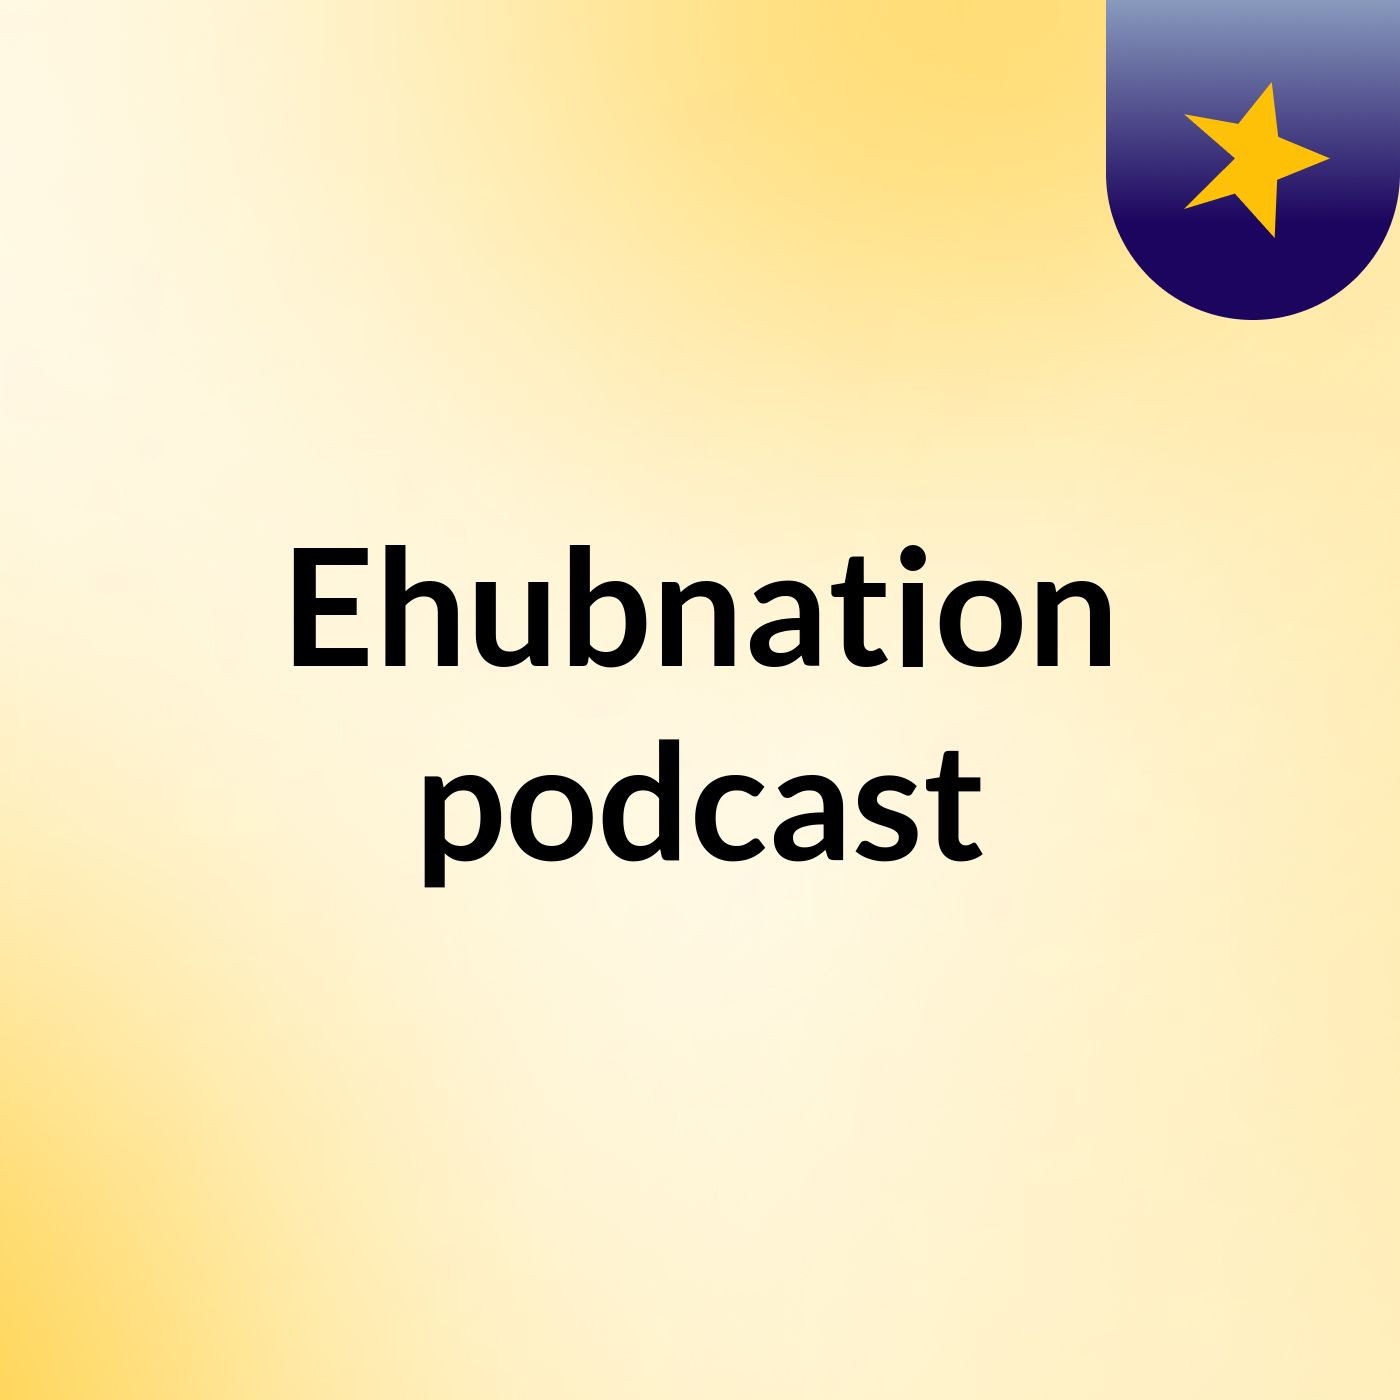 Ehubnation podcast